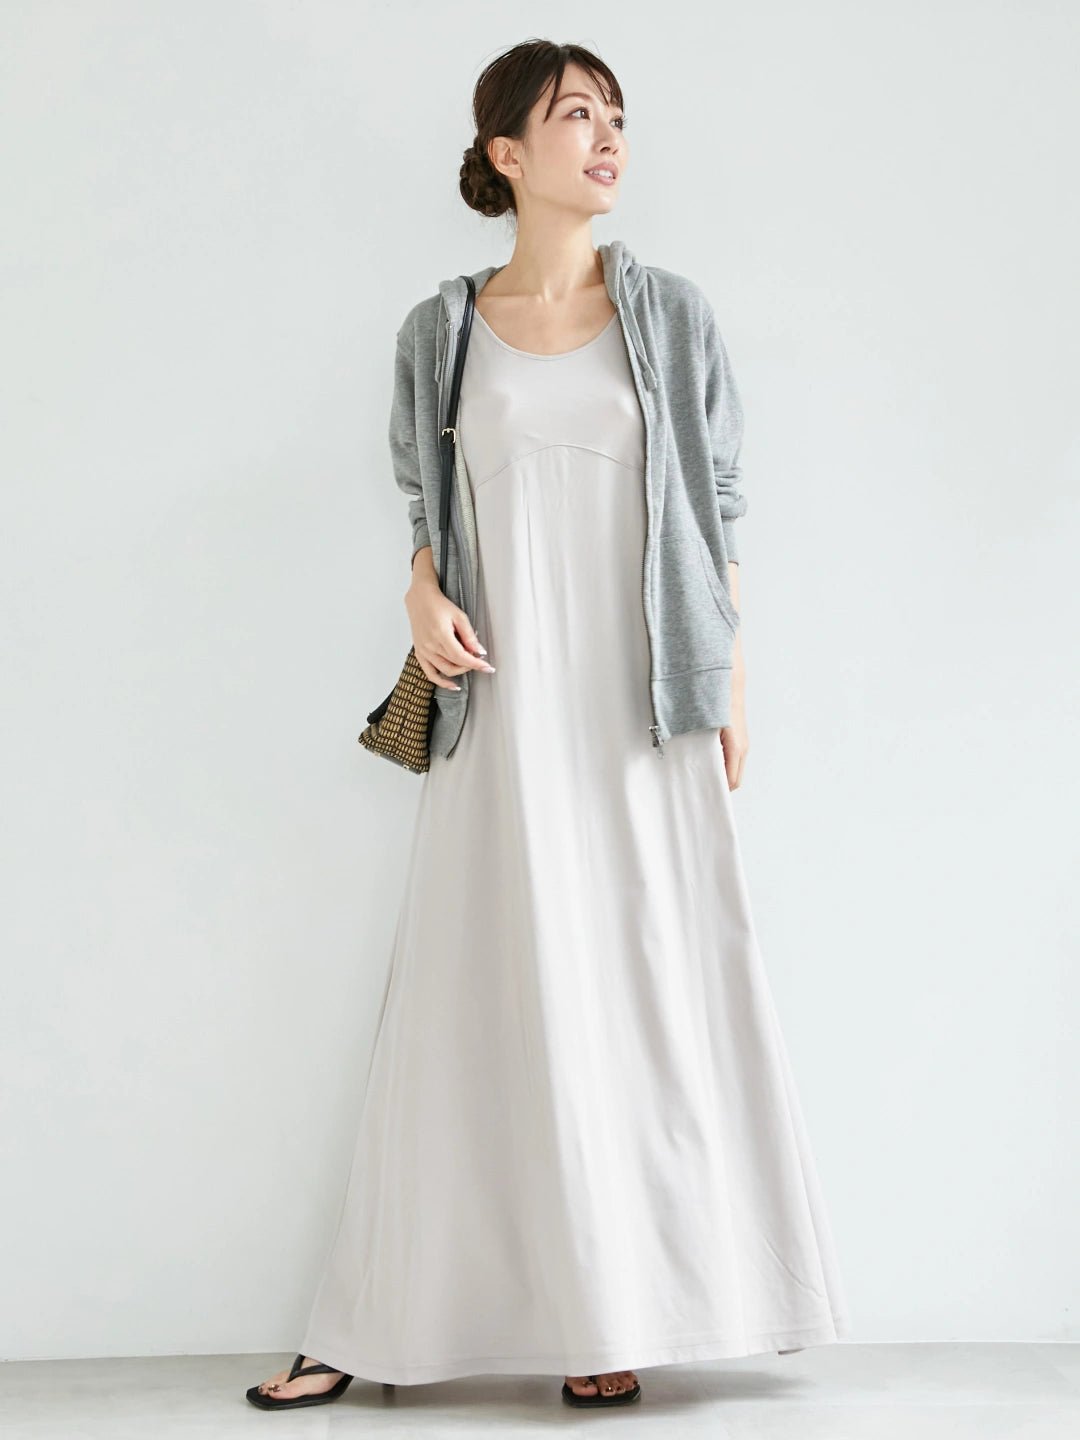 
                  
                    インナーワンピース-ライトグレー- Inner Dress-Grey- - Nanafu｜YUKATA Roomwear
                  
                